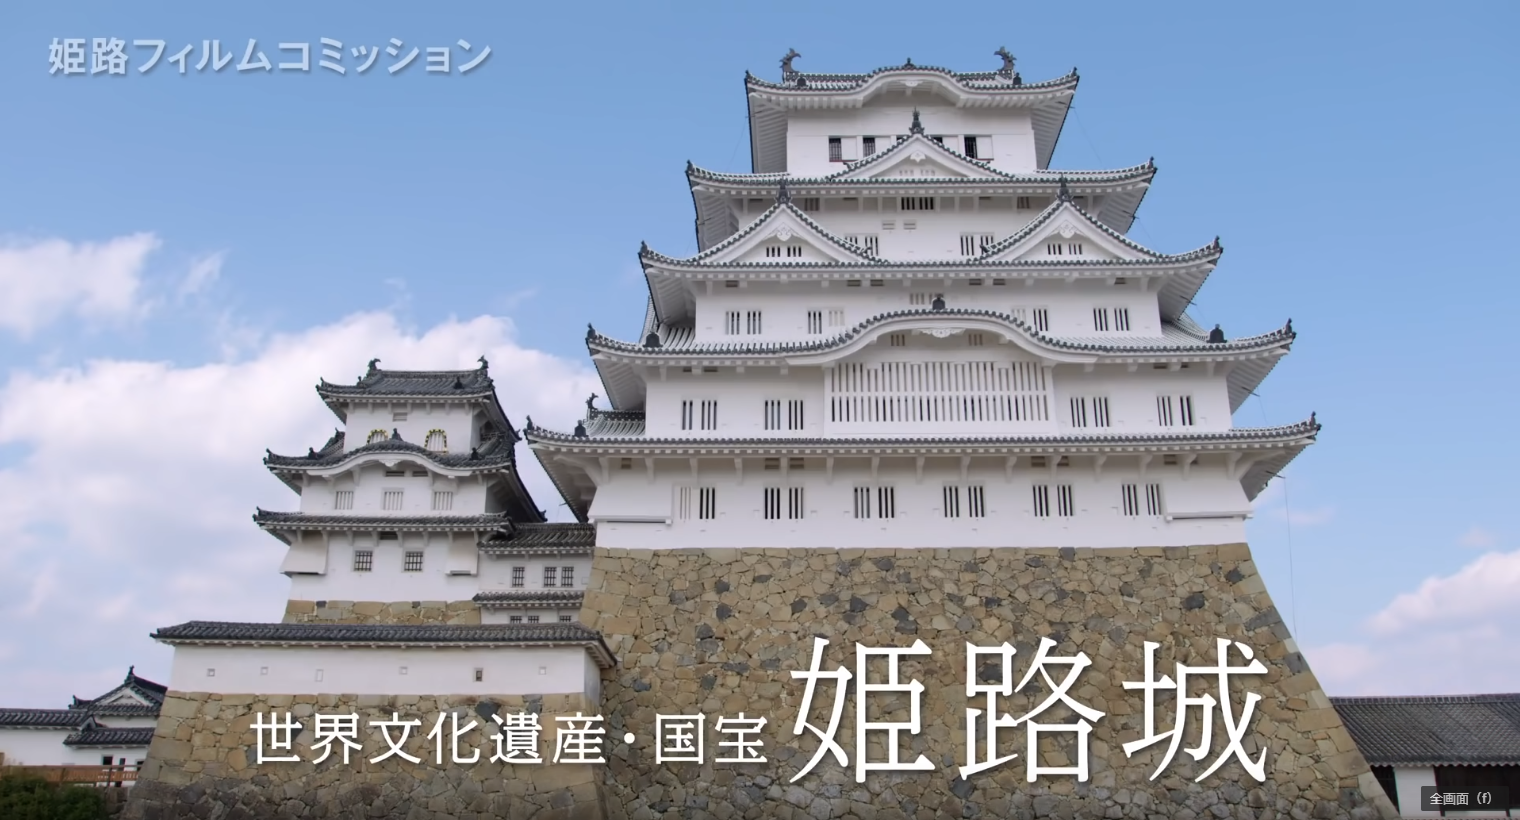 「世界文化遺産・国宝 姫路城 PR動画」のサムネイル画像